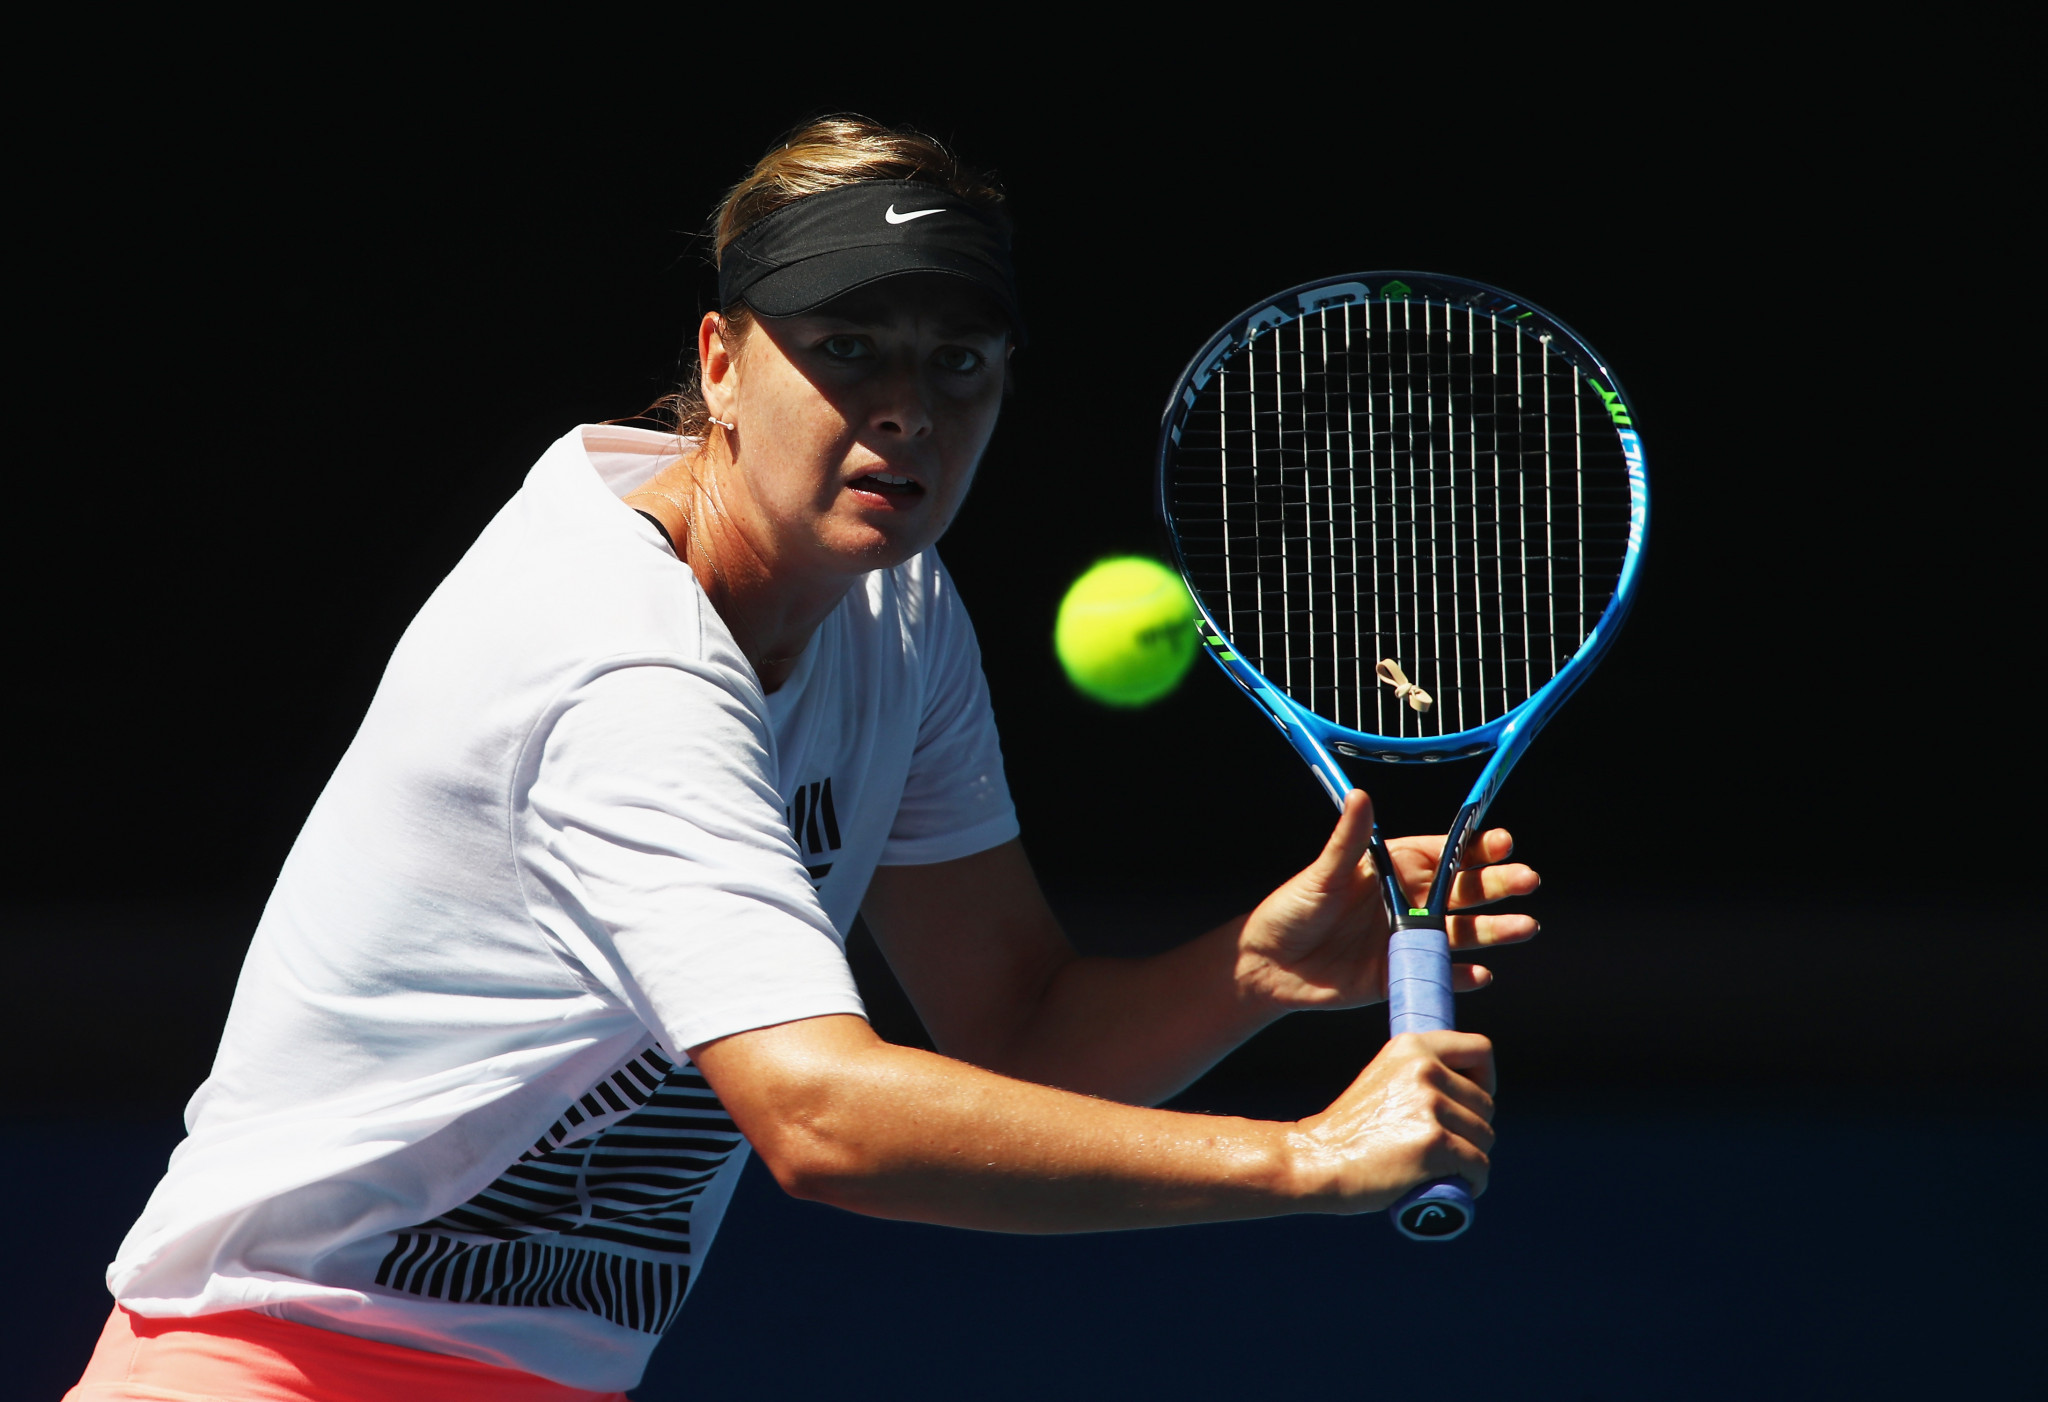 Sharapova set for Australian Open return as Nadal headlines action on opening day in Melbourne